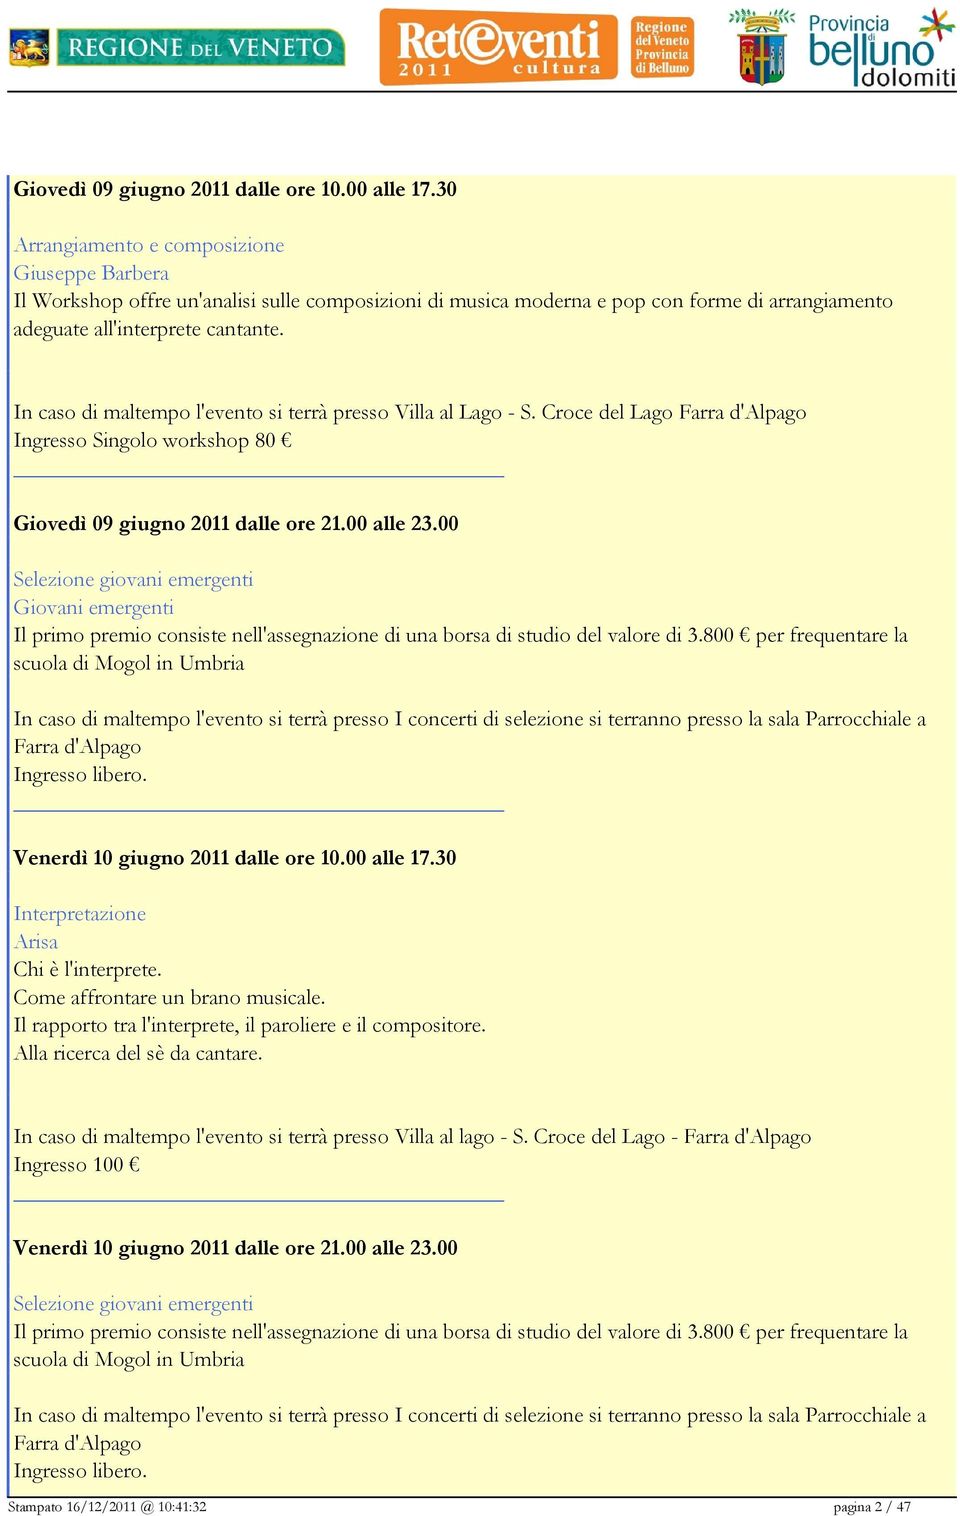 In caso di maltempo l'evento si terrà presso Villa al Lago - S. Croce del Lago Farra d'alpago Ingresso Singolo workshop 80 Giovedì 09 giugno 2011 dalle ore 21.00 alle 23.